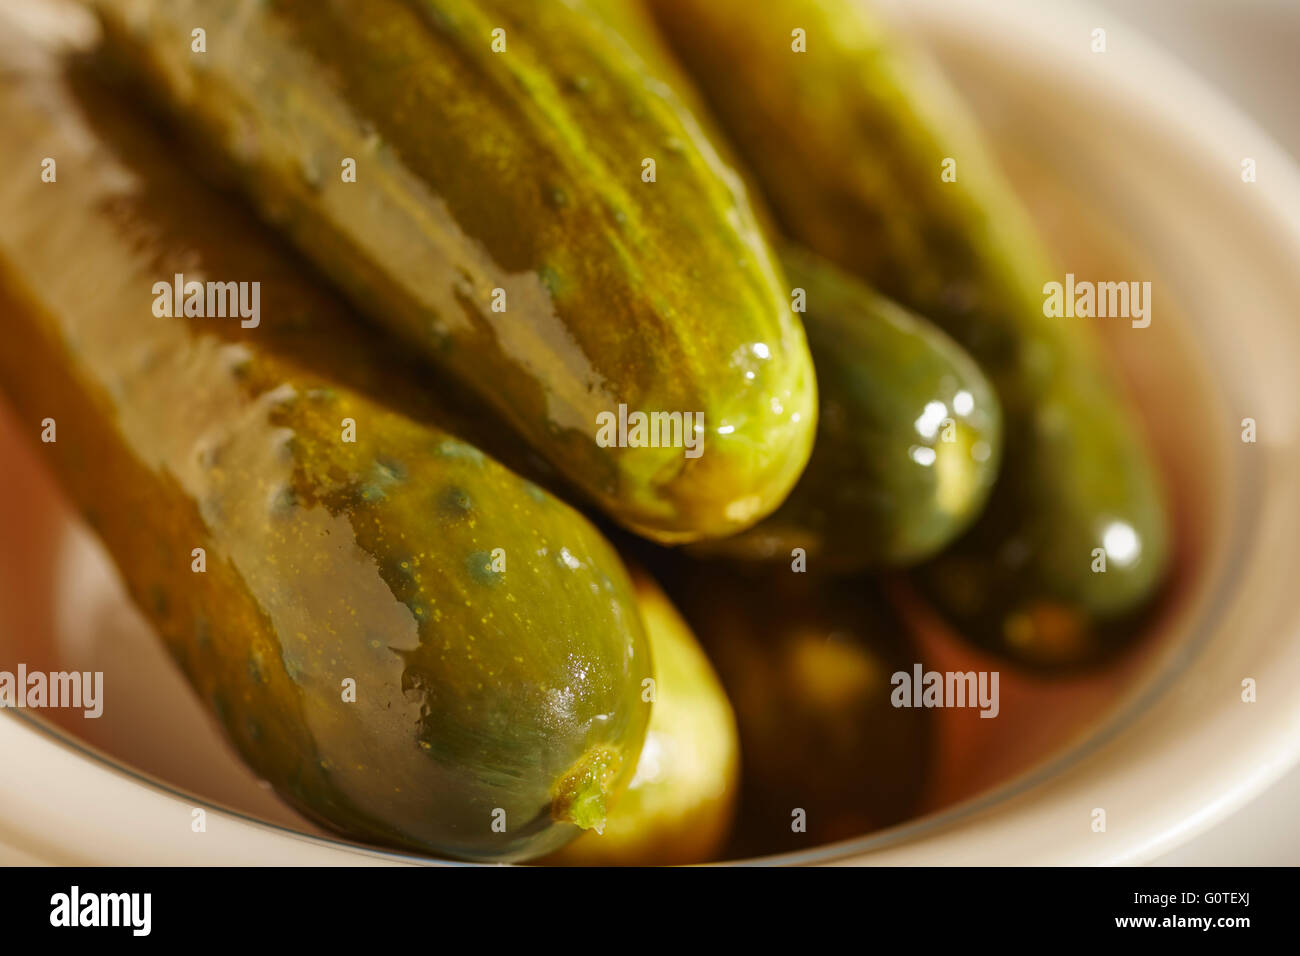 half sour kosher pickles Stock Photo